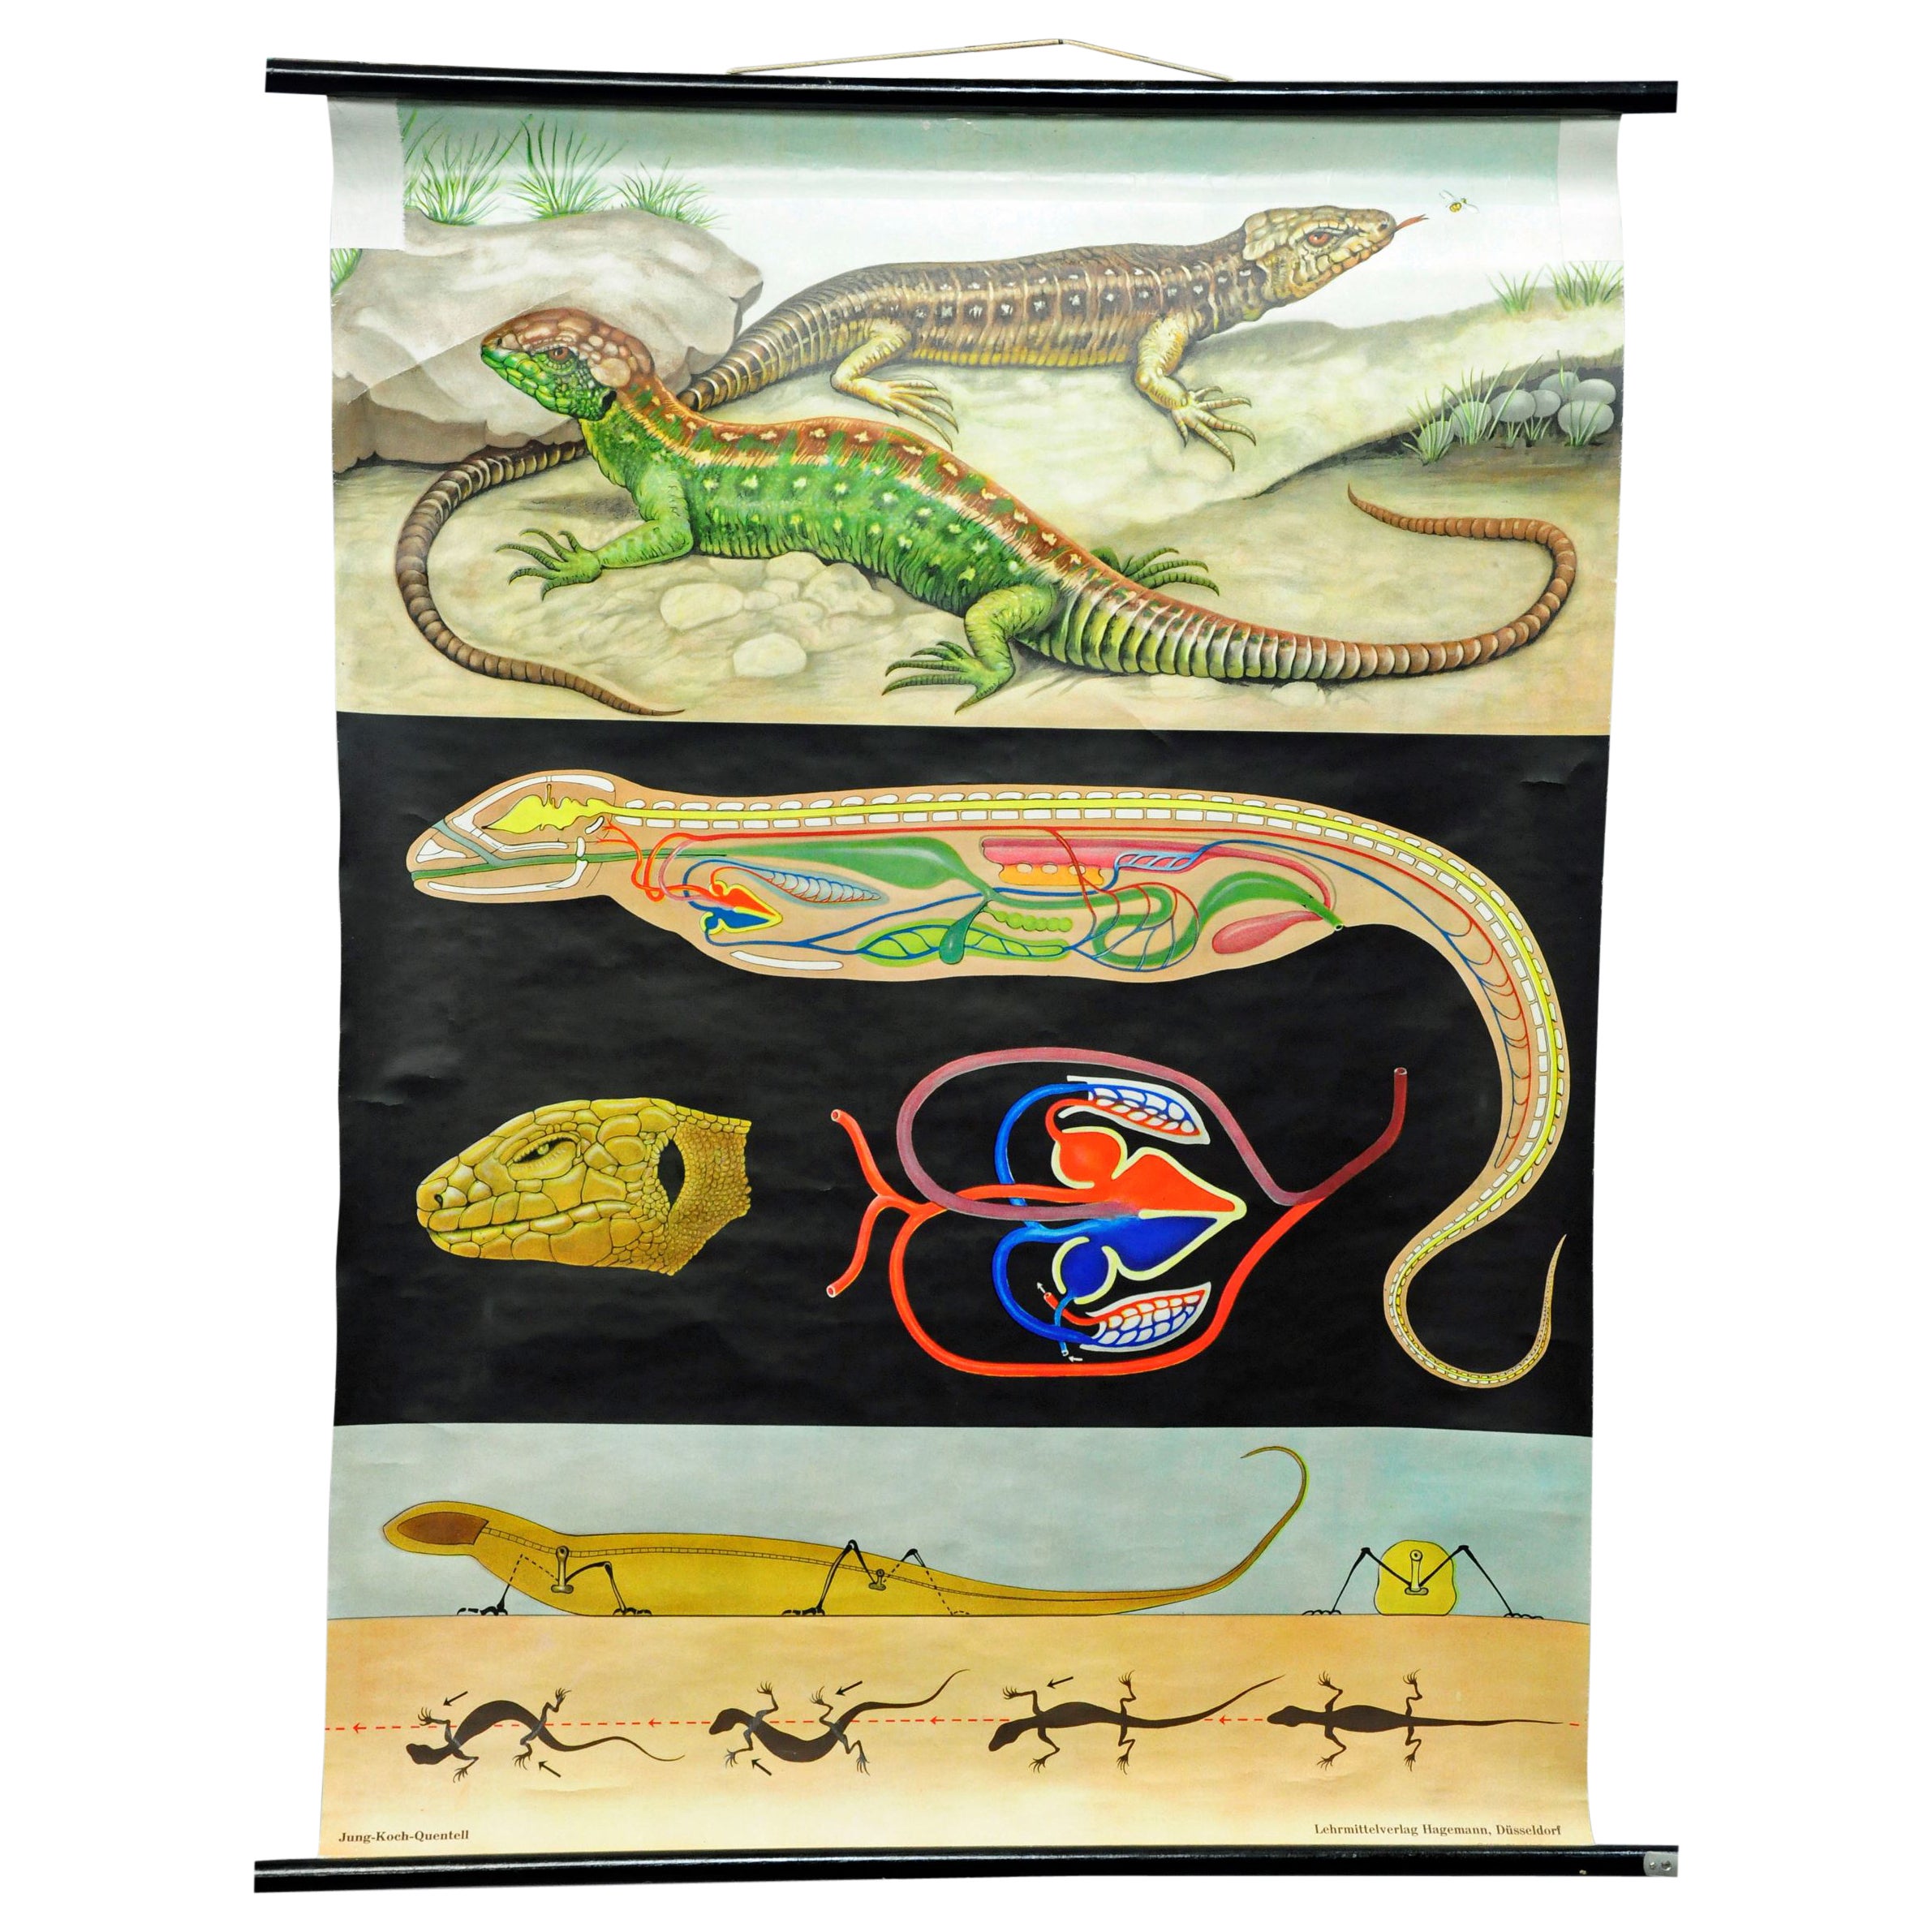 Amphibians Sand Lizard Lacerta Agilis Wallchart Art Print Jung Koch Quentell For Sale